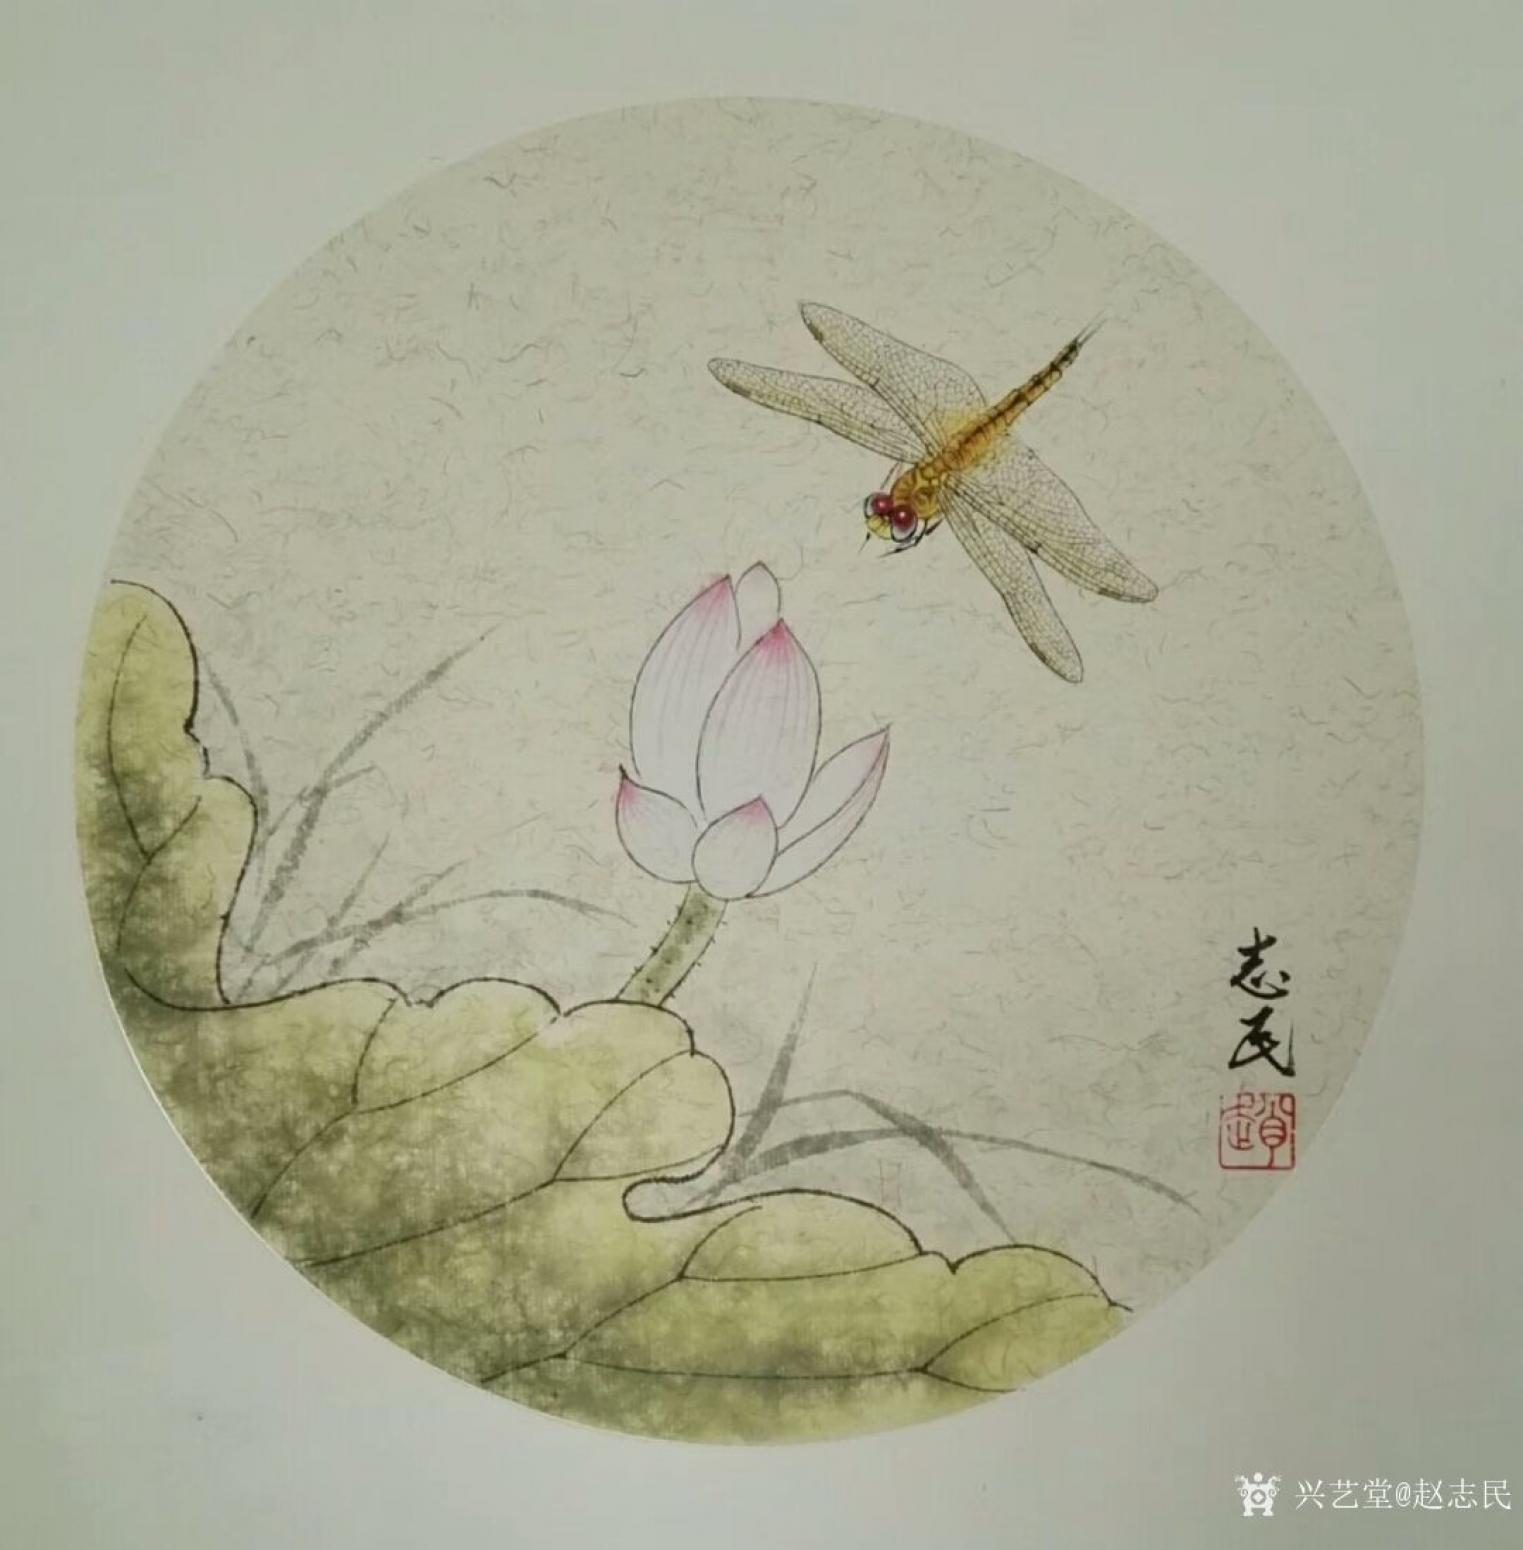 赵志民国画作品《蜻蜓》【图1】